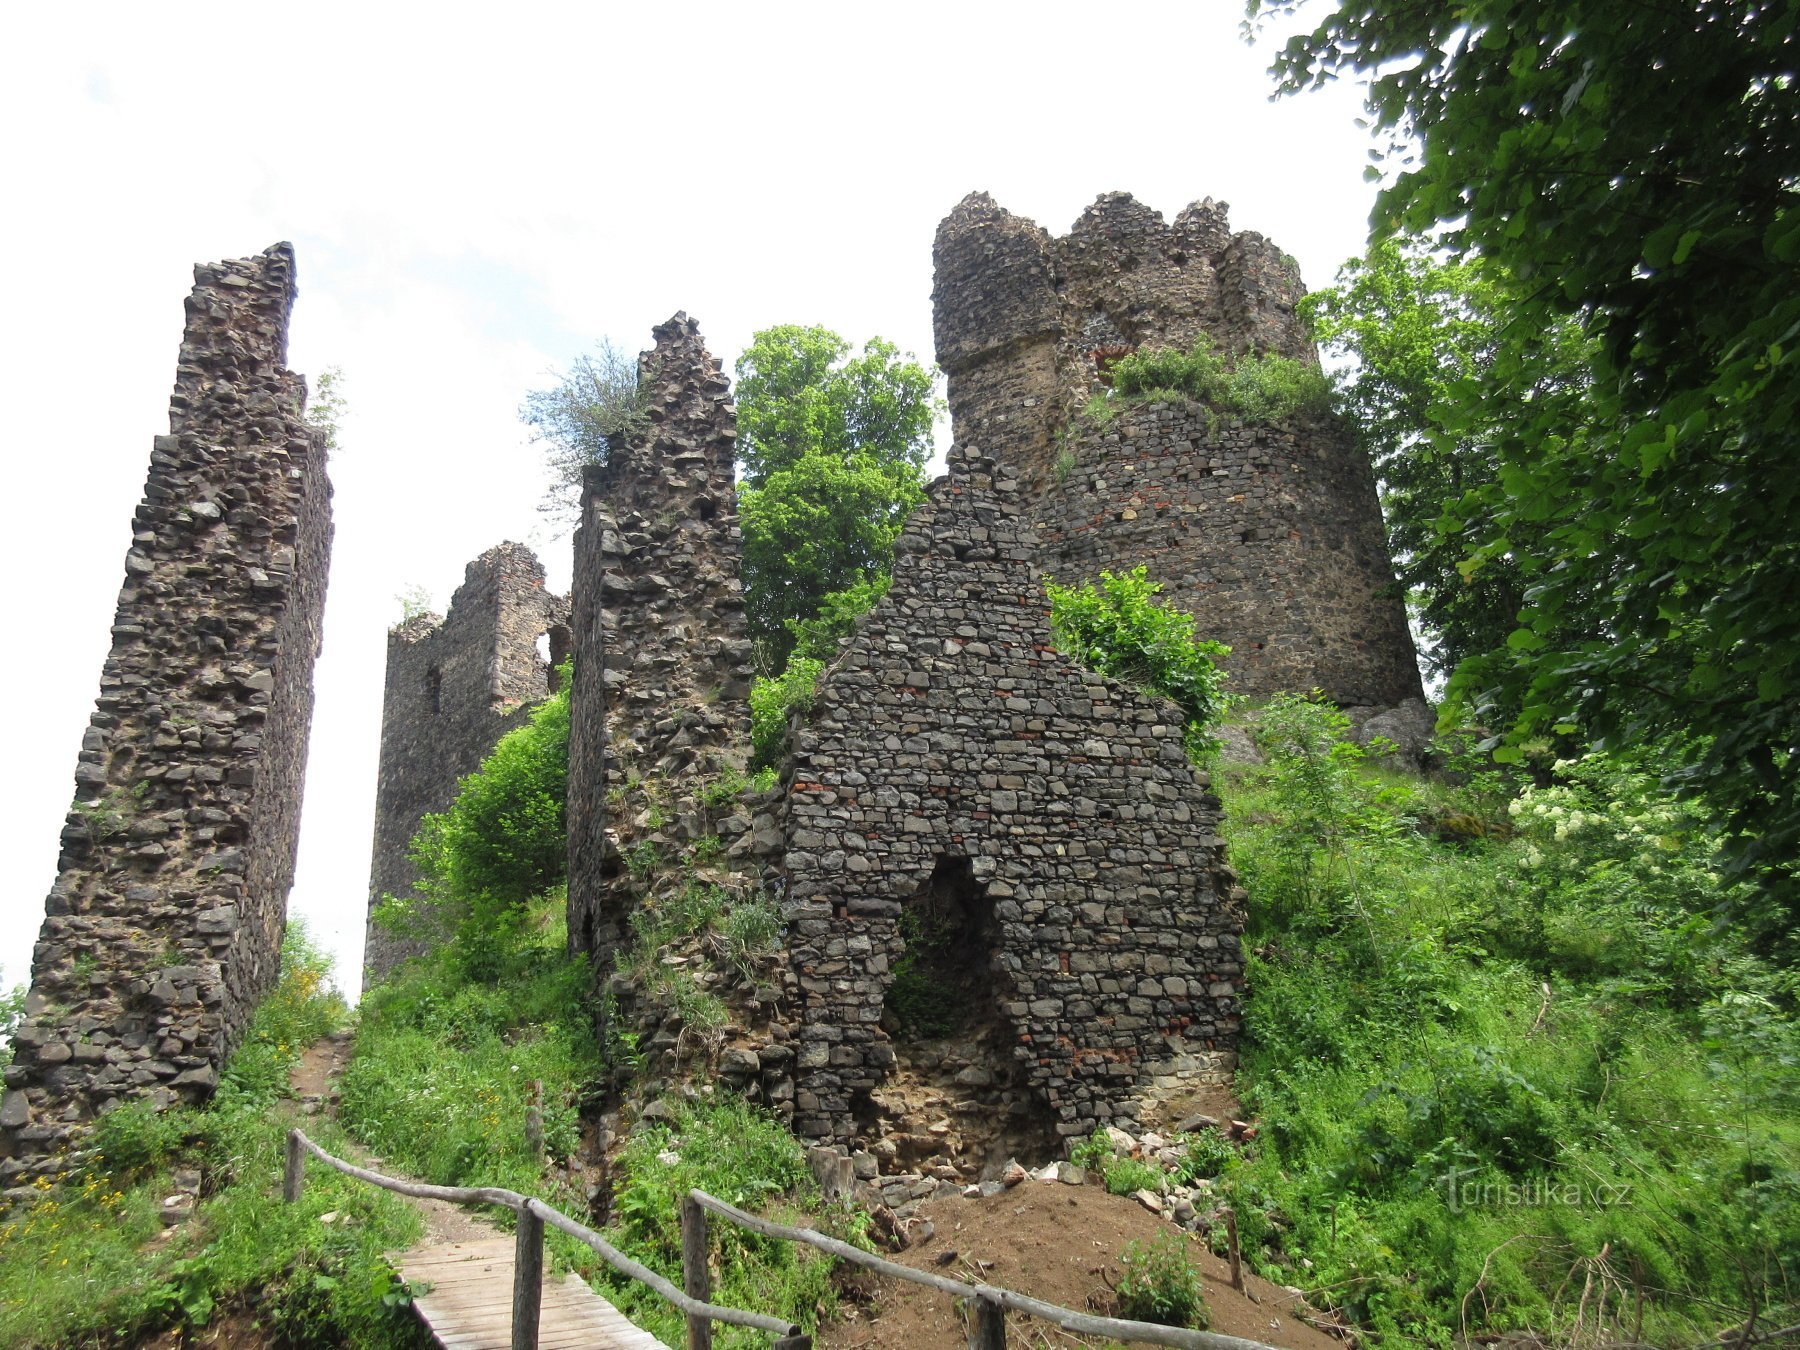 Eerste zicht op de ruïne met de ronde toren